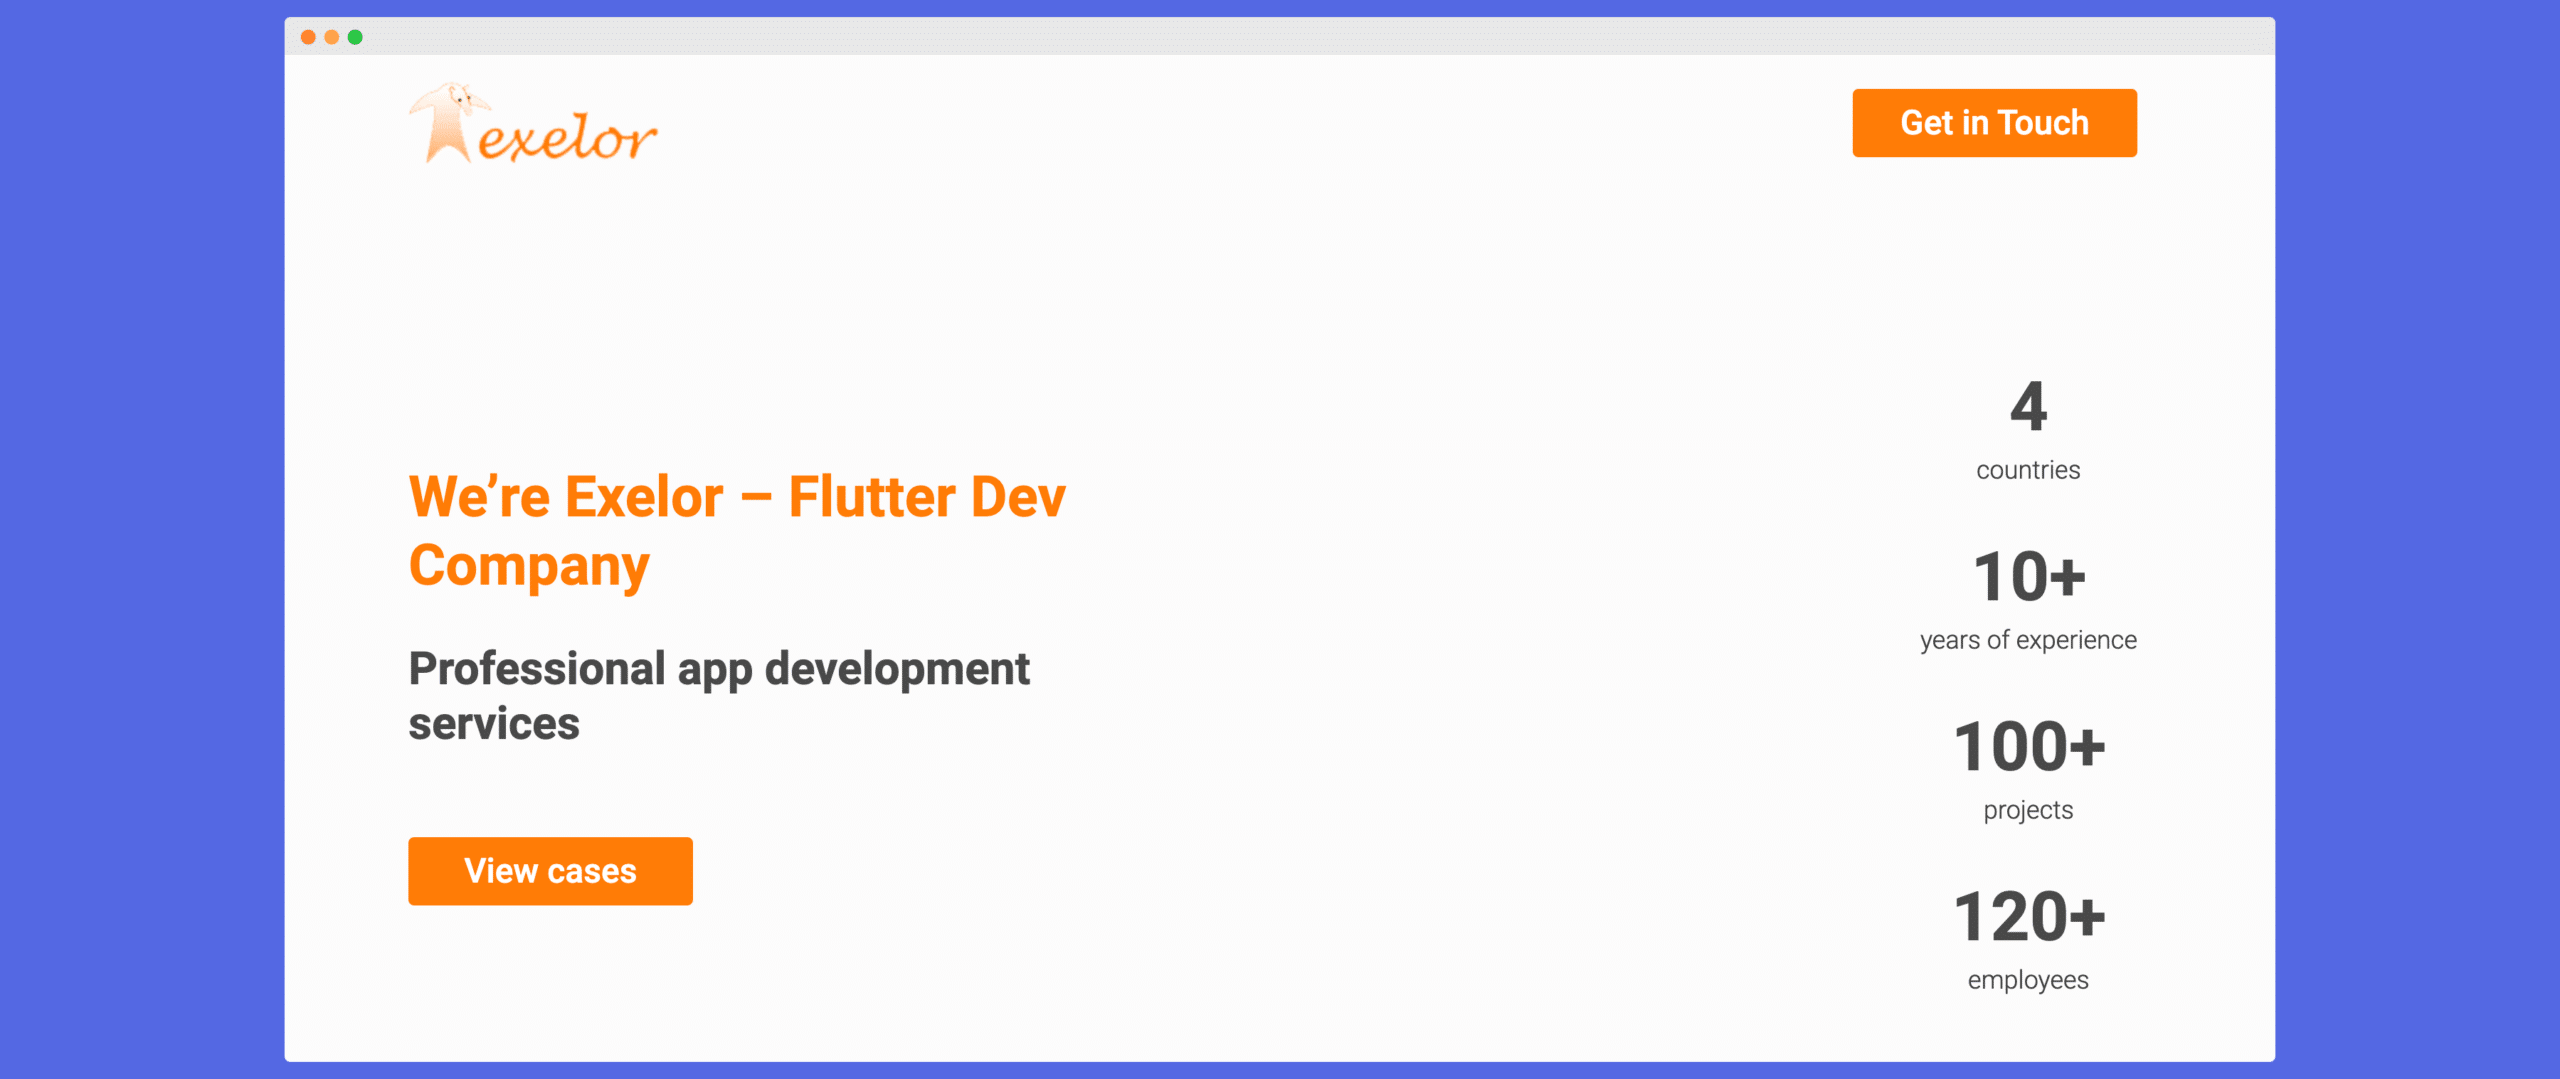 exelor - flutter dev mobile app development company from ukraine